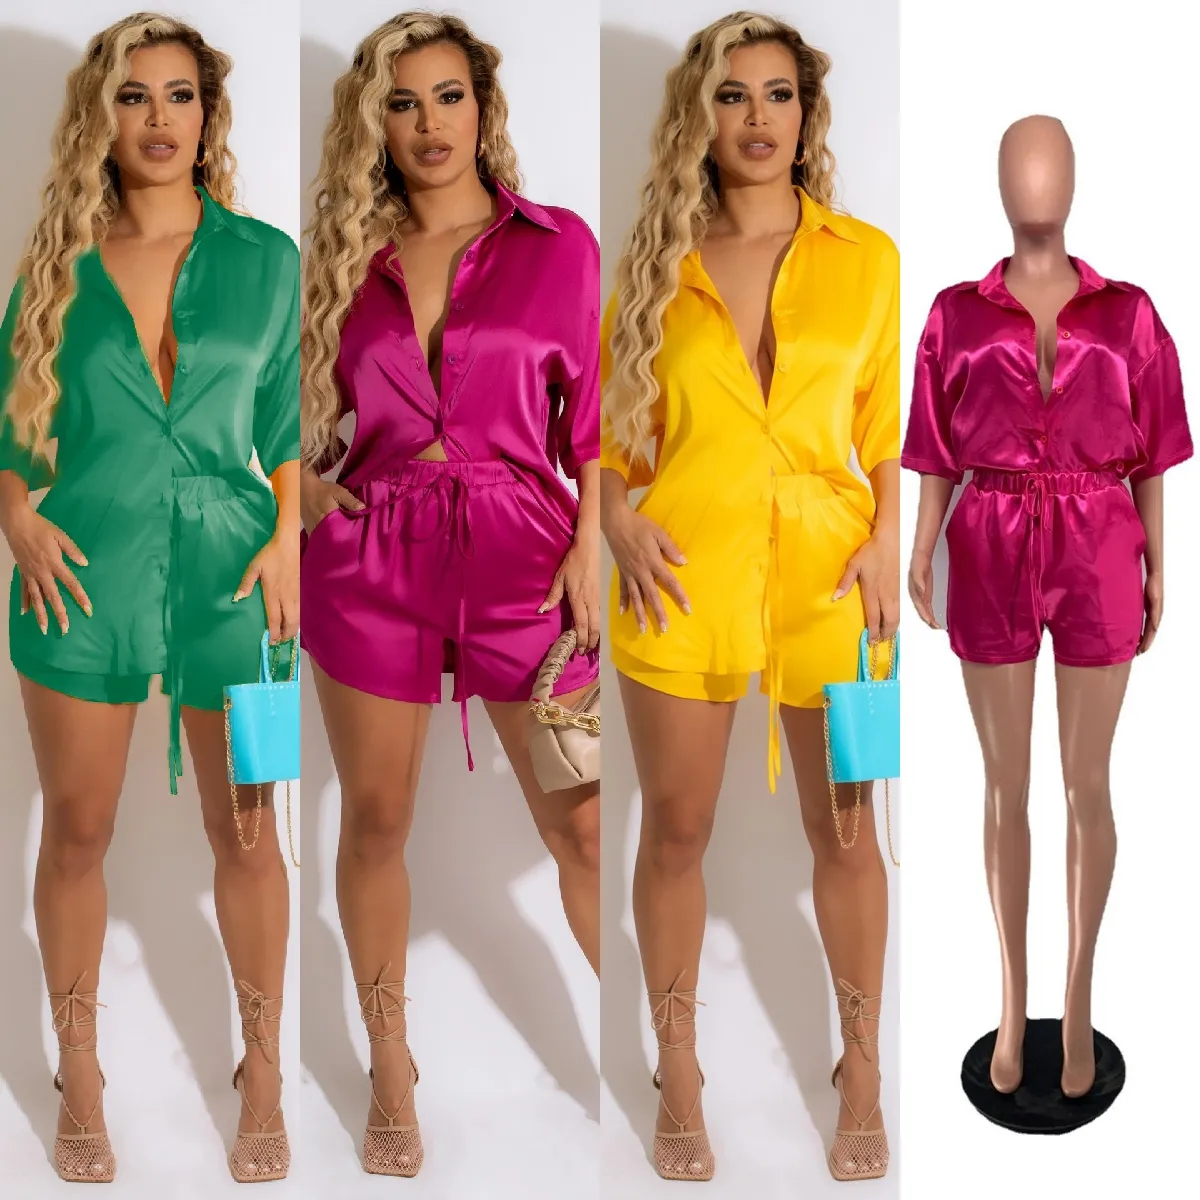 DP2018 New Collection Summer Clothes Plus Size Women's Blouses 2 Piece Two Piece Short Set